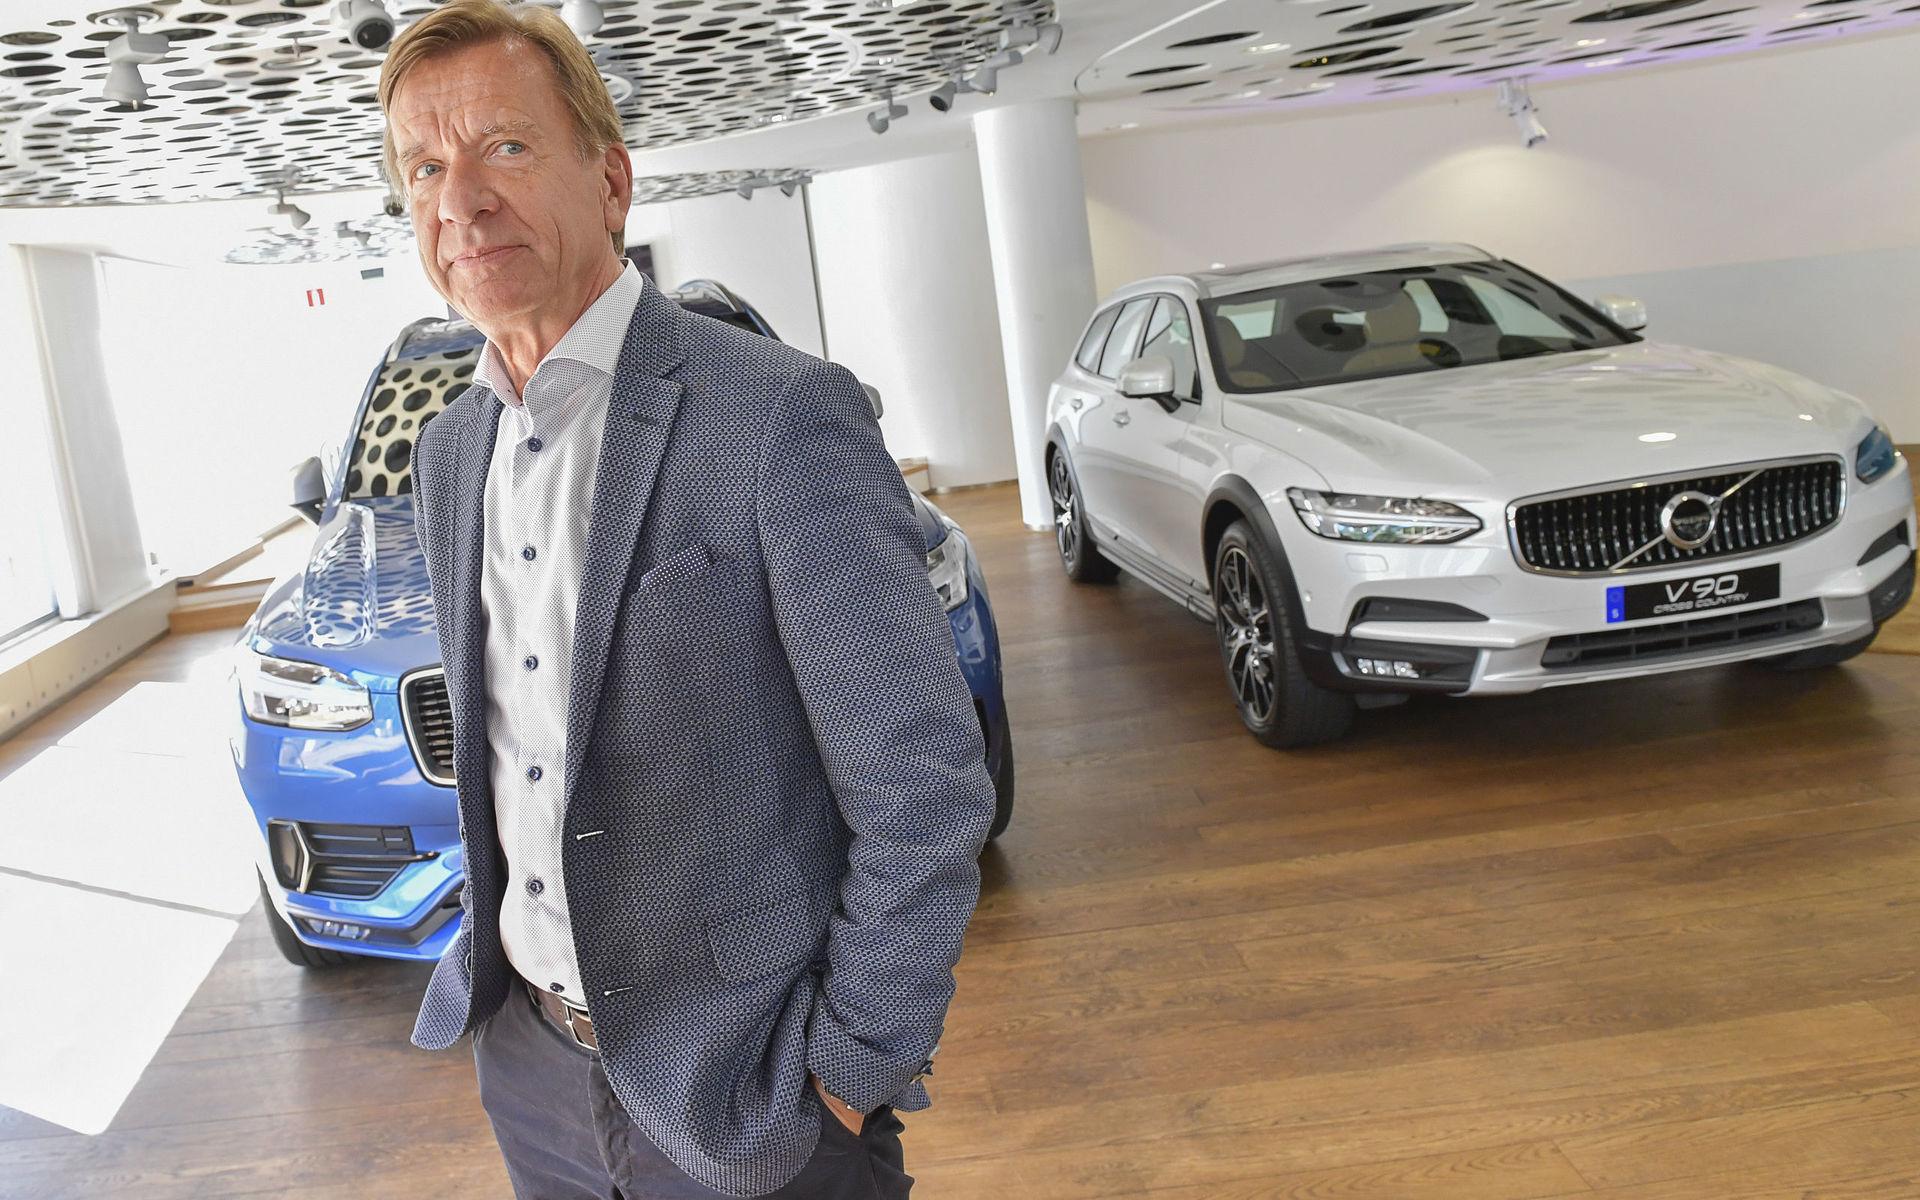 ... detsamma gäller Volvo Cars som är en av de största arbetsgivarna i staden. Håkan Samuelsson förlängde sitt vd-kontrakt över 2022 tidigare i år.